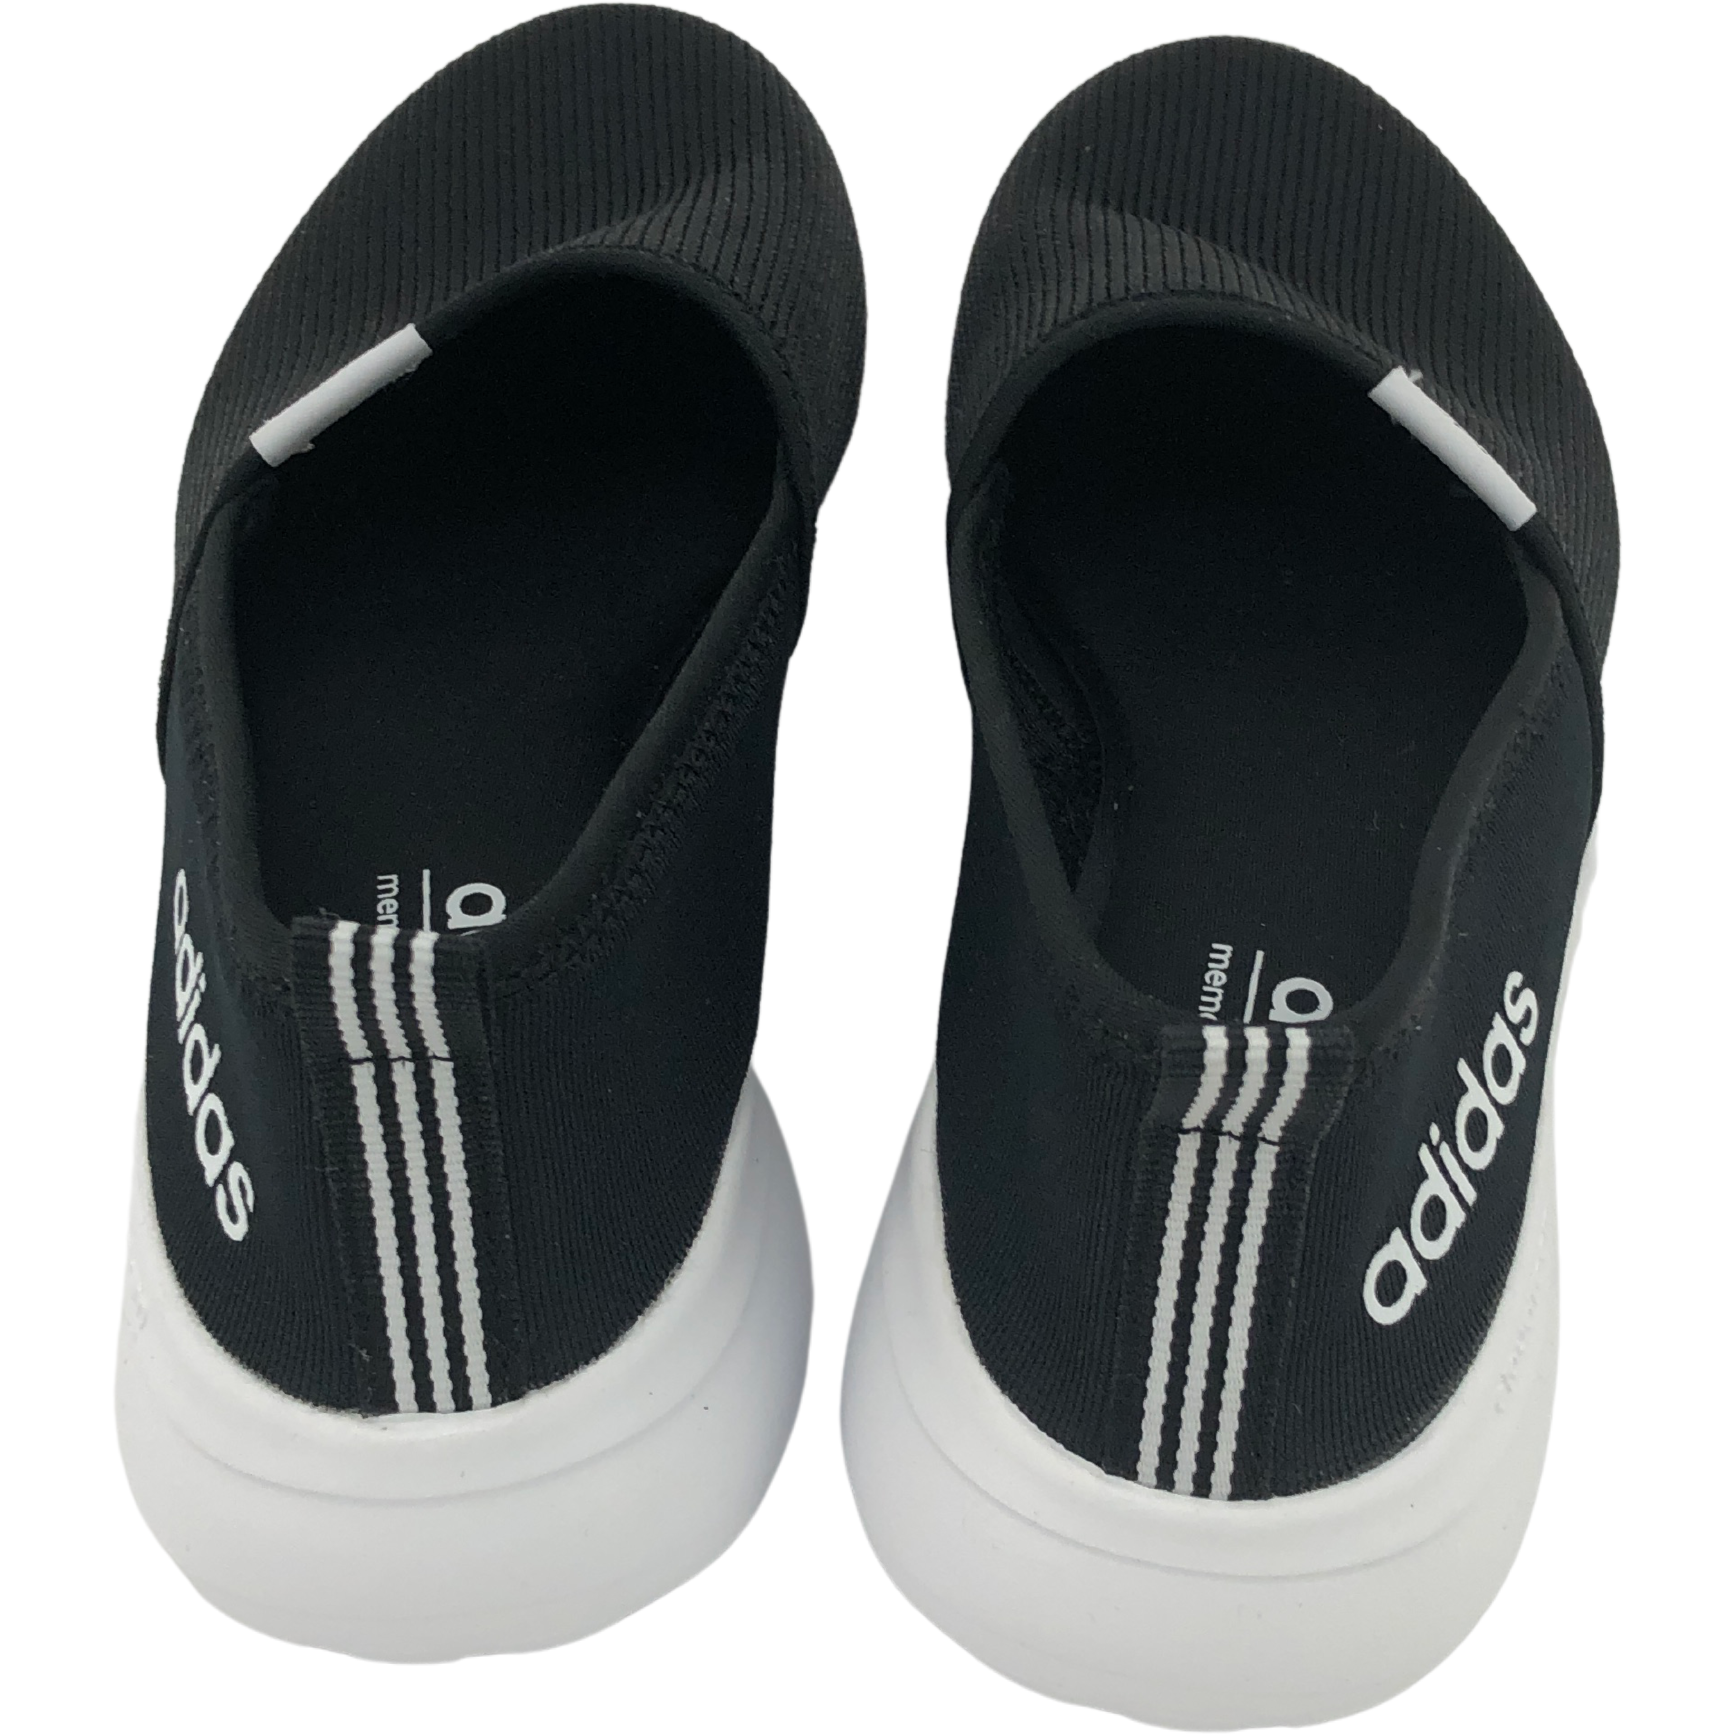 Adidas Women's Slip-On Shoes / Lite Racer SlipOn / Black and White / S ...